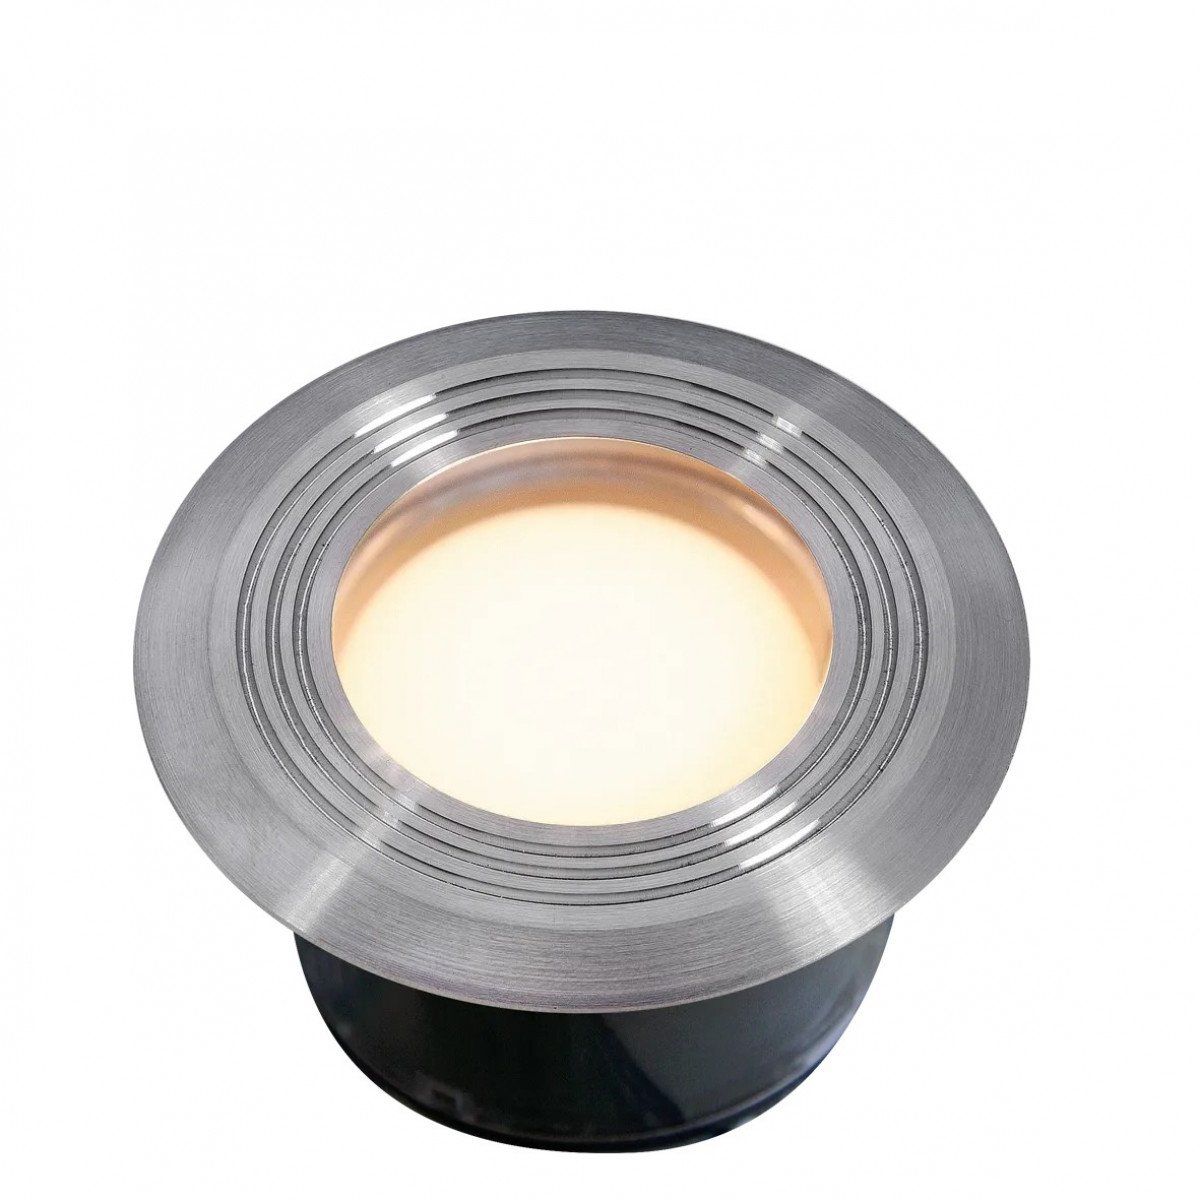 Lightpro Onyx 60 R1 Spot 12 Volt Silber RVS Modern